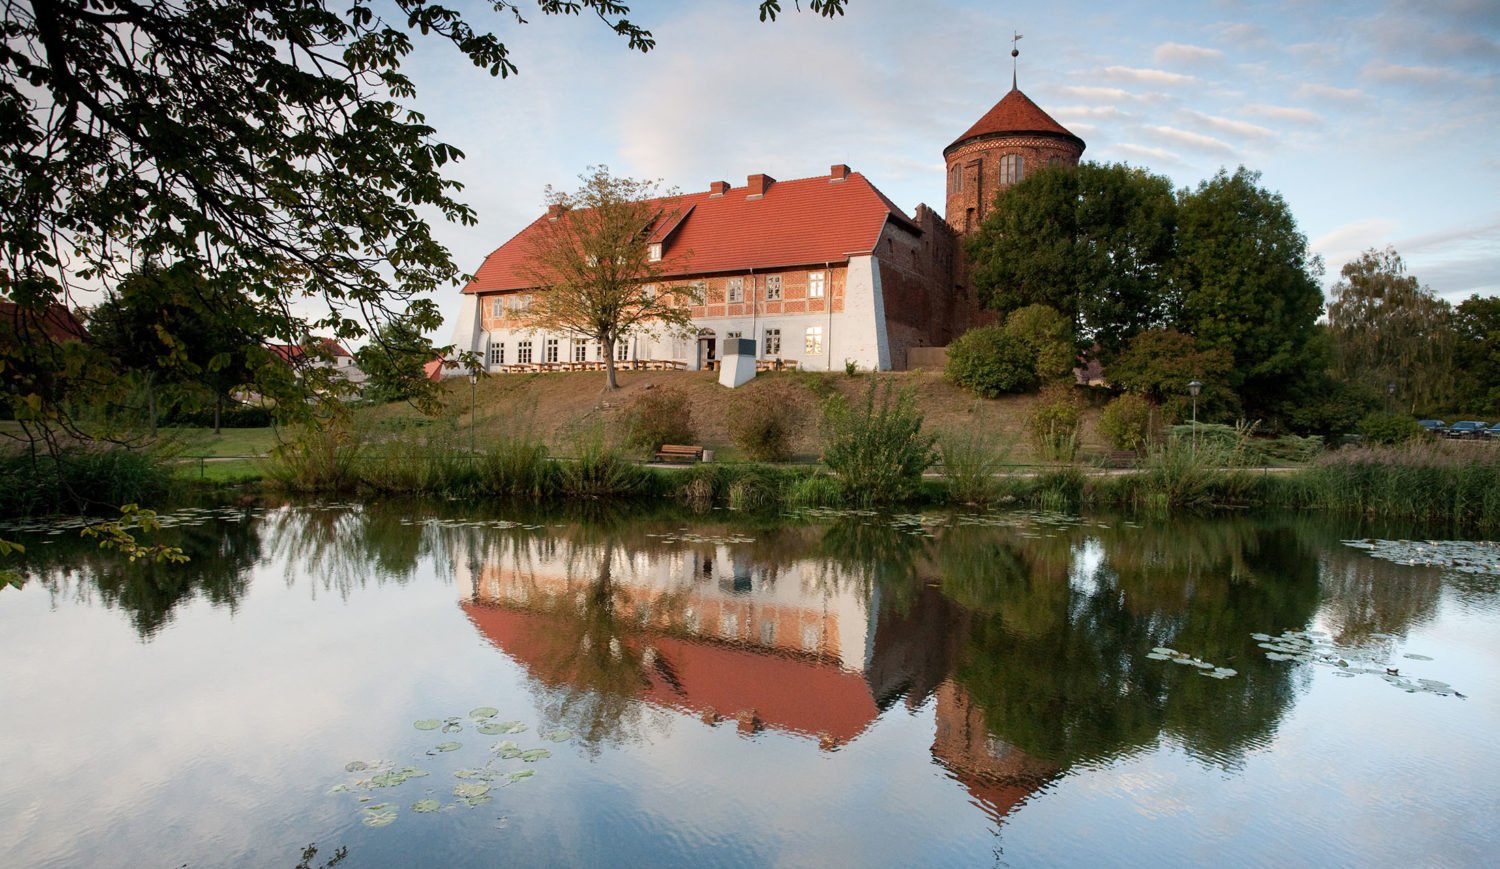 Die Alte Burg Neustadt-Glewe ist die älteste noch erhaltene Wehrburg Mecklenburgs und zählt zu den besterhaltenen Burgen des Landes